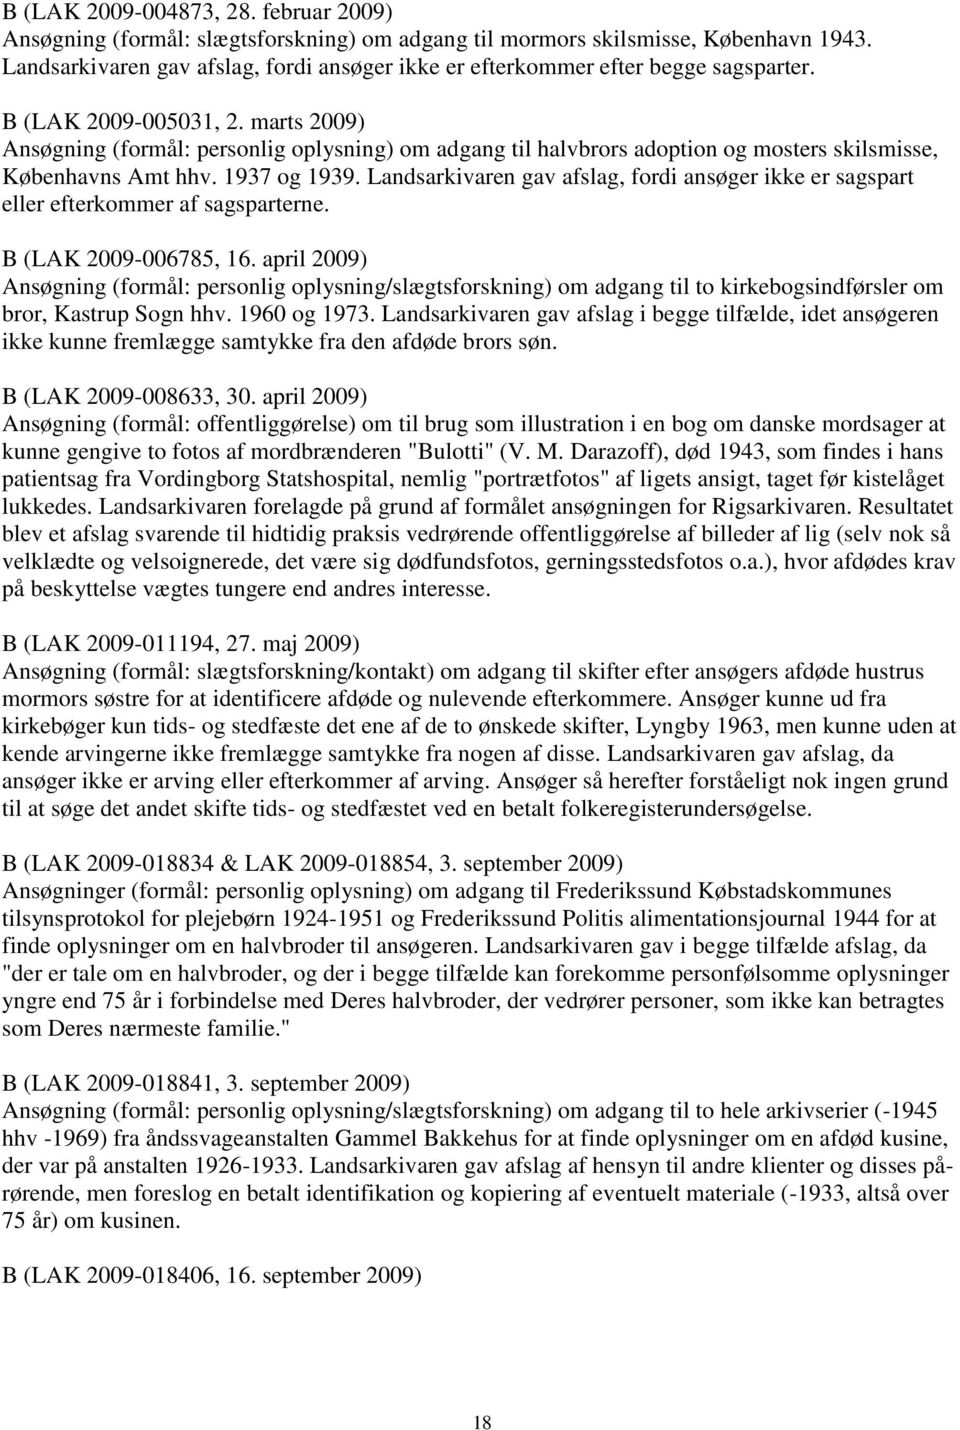 marts 2009) Ansøgning (formål: personlig oplysning) om adgang til halvbrors adoption og mosters skilsmisse, Københavns Amt hhv. 1937 og 1939.